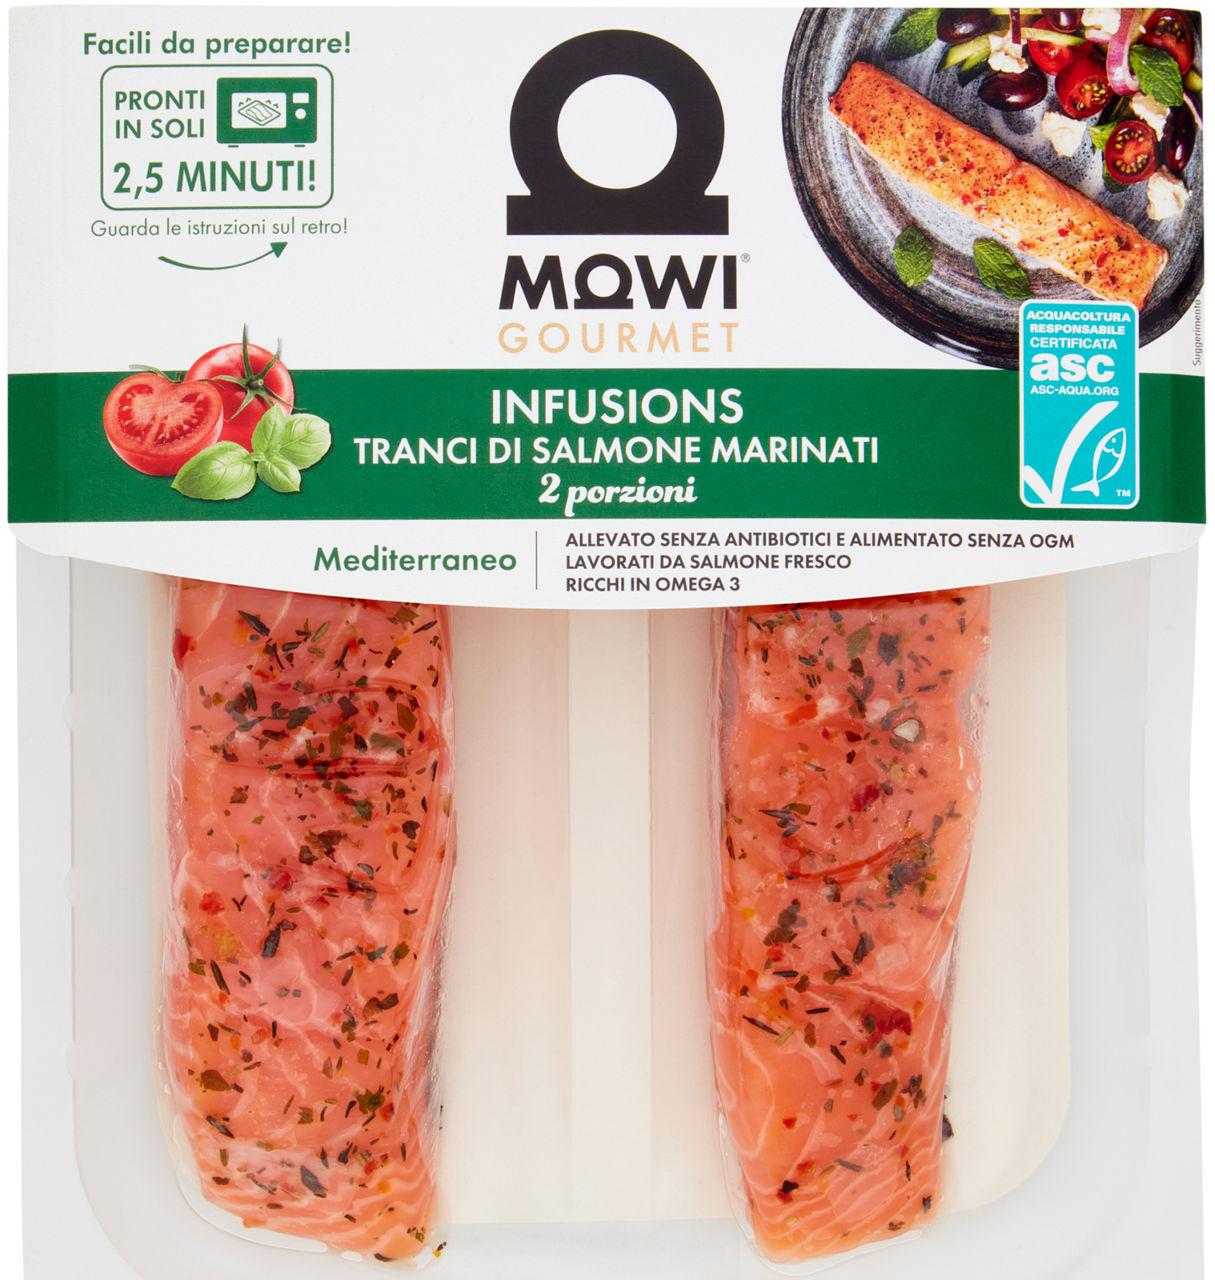 Tranci di salmone norvegese marinato gusto mediterr infusions mowi pf 220 g skin